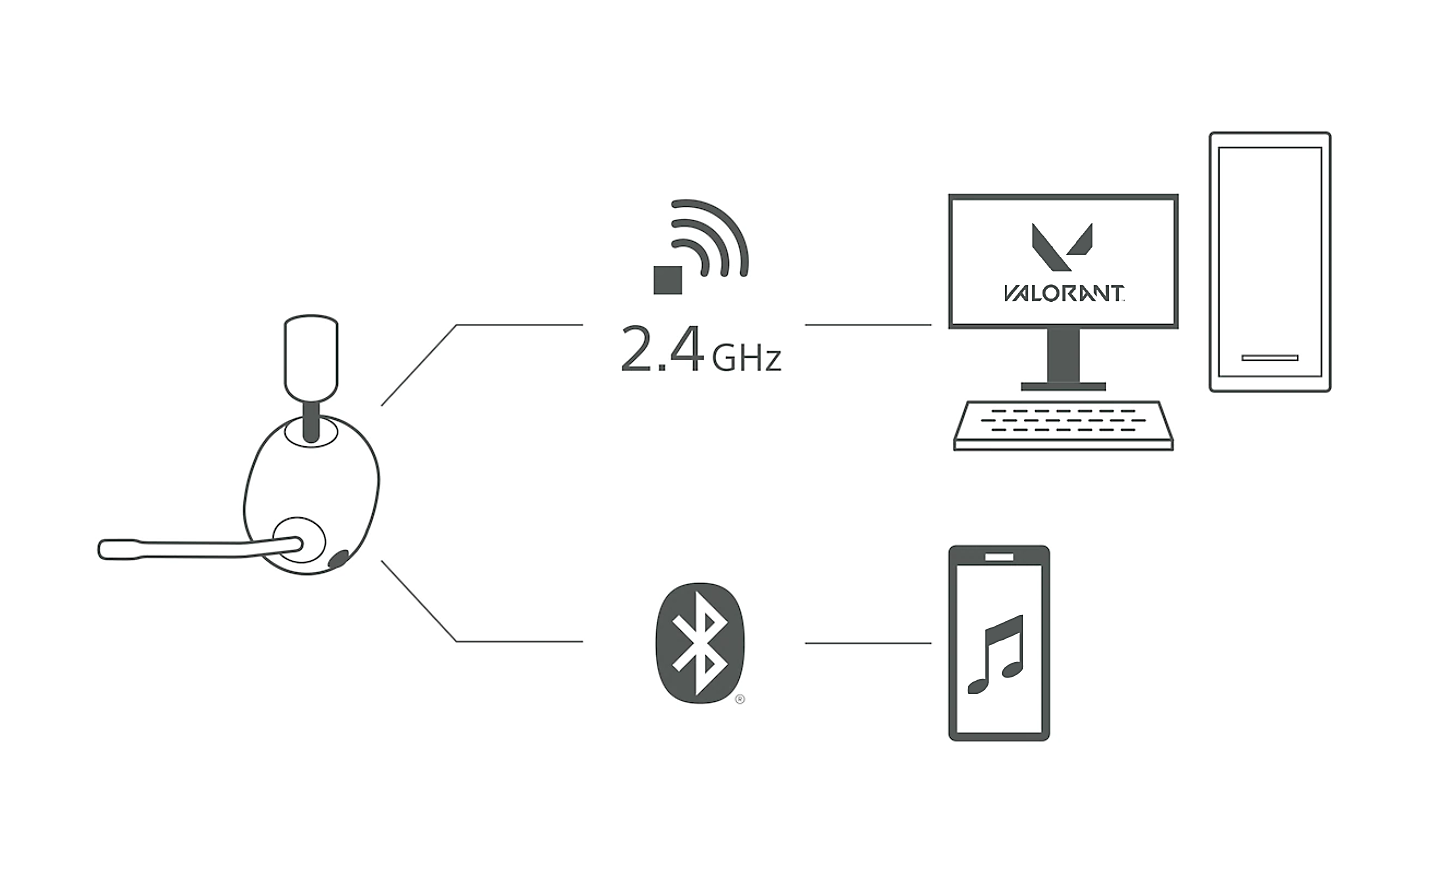 ภาพชุดหูฟัง H9 พร้อมเส้นต่างๆ ที่พุ่งไปยัง PC ผ่านสัญลักษณ์สัญญาณไร้สาย 2.4GHz และไปยังโทรศัพท์มือถือผ่านสัญลักษณ์ Bluetooth